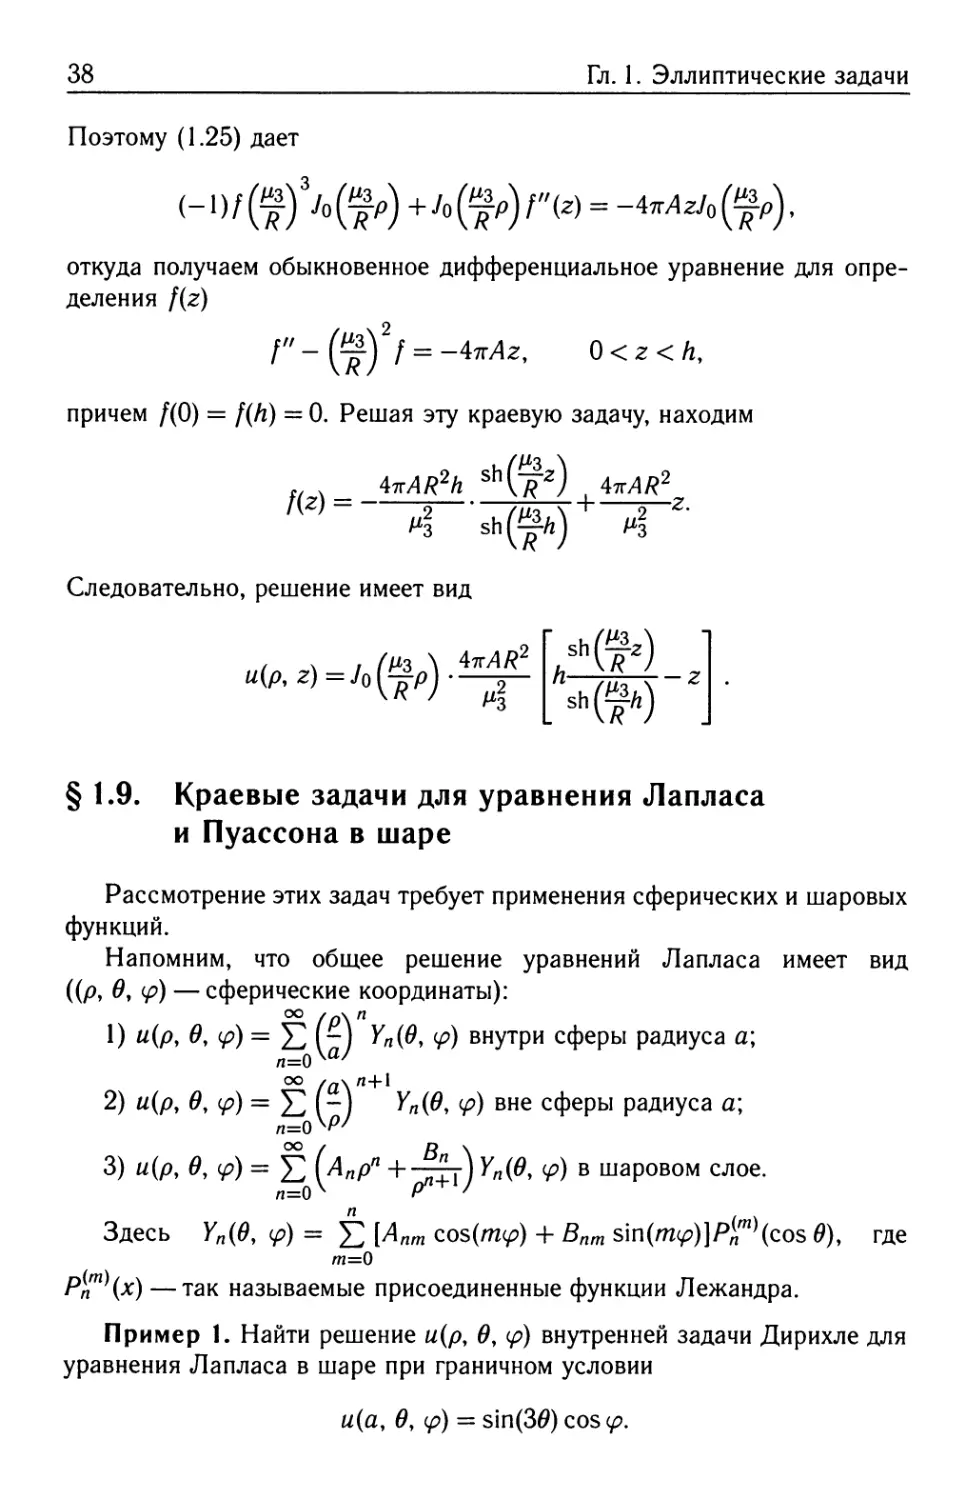 § 1.9. Краевые задачи для уравнения Лапласа и Пуассона в шаре